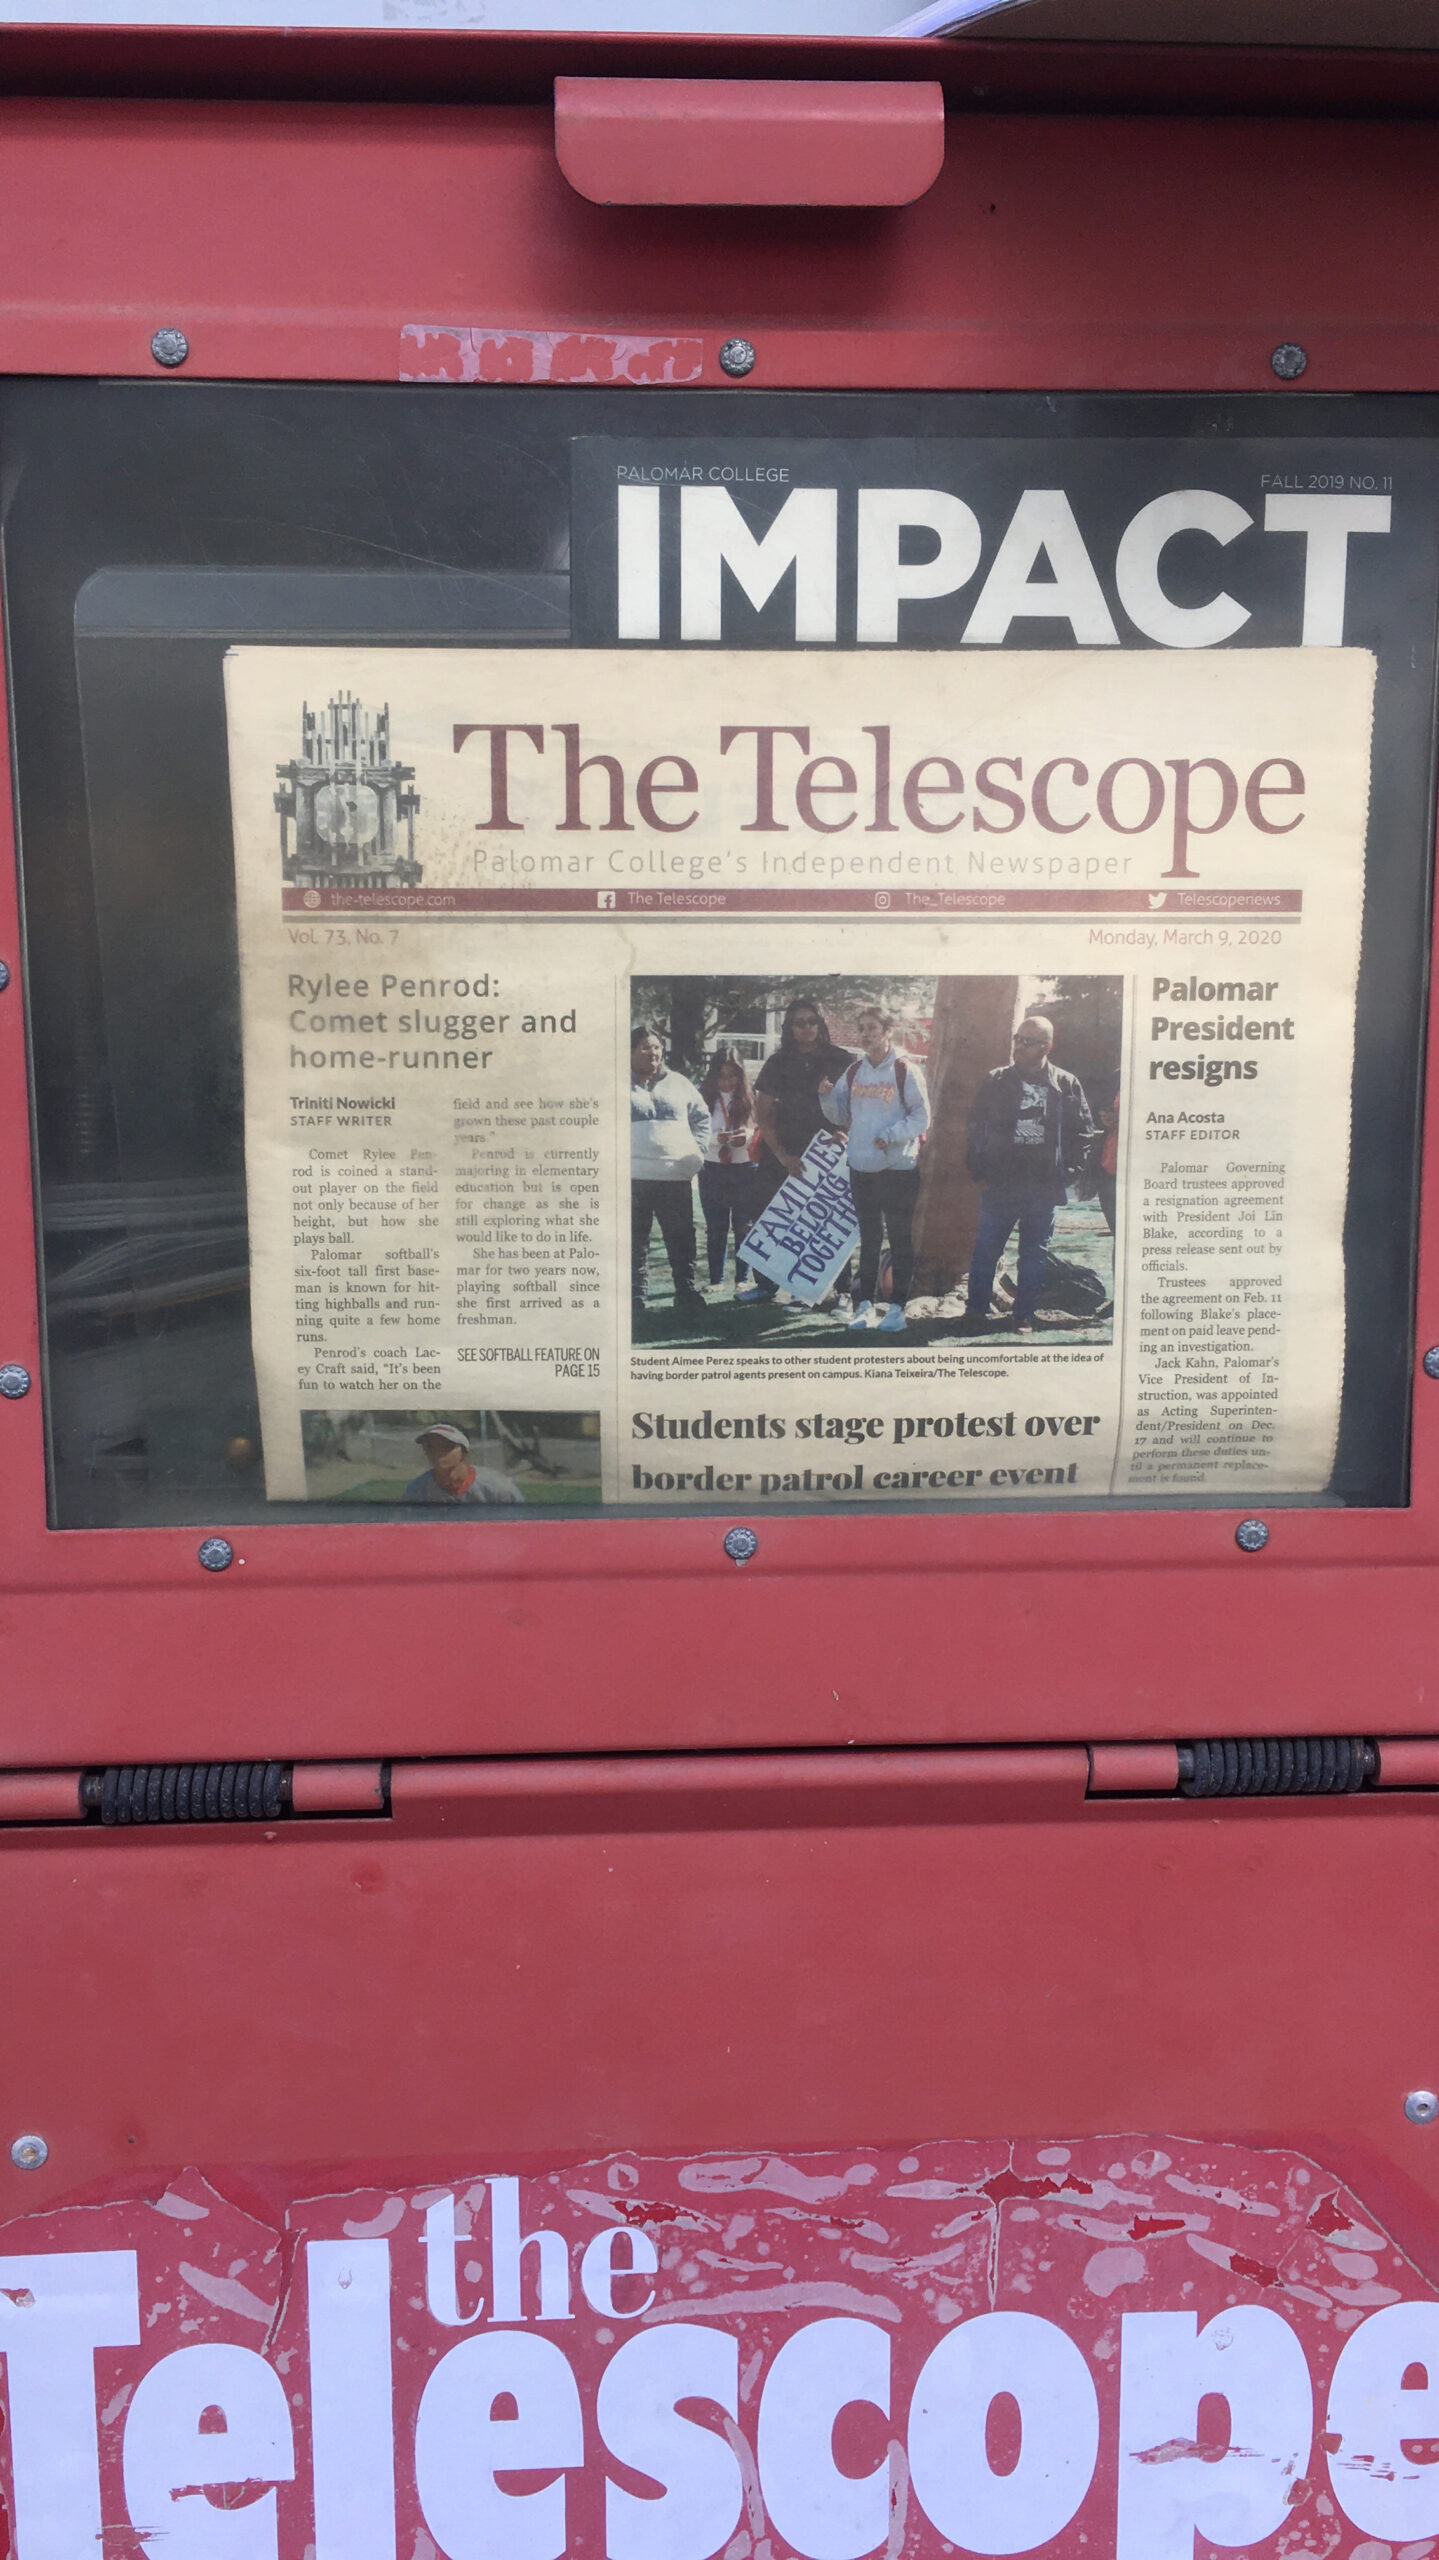 A Telescope newspaper displays inside a red newspaper bin.